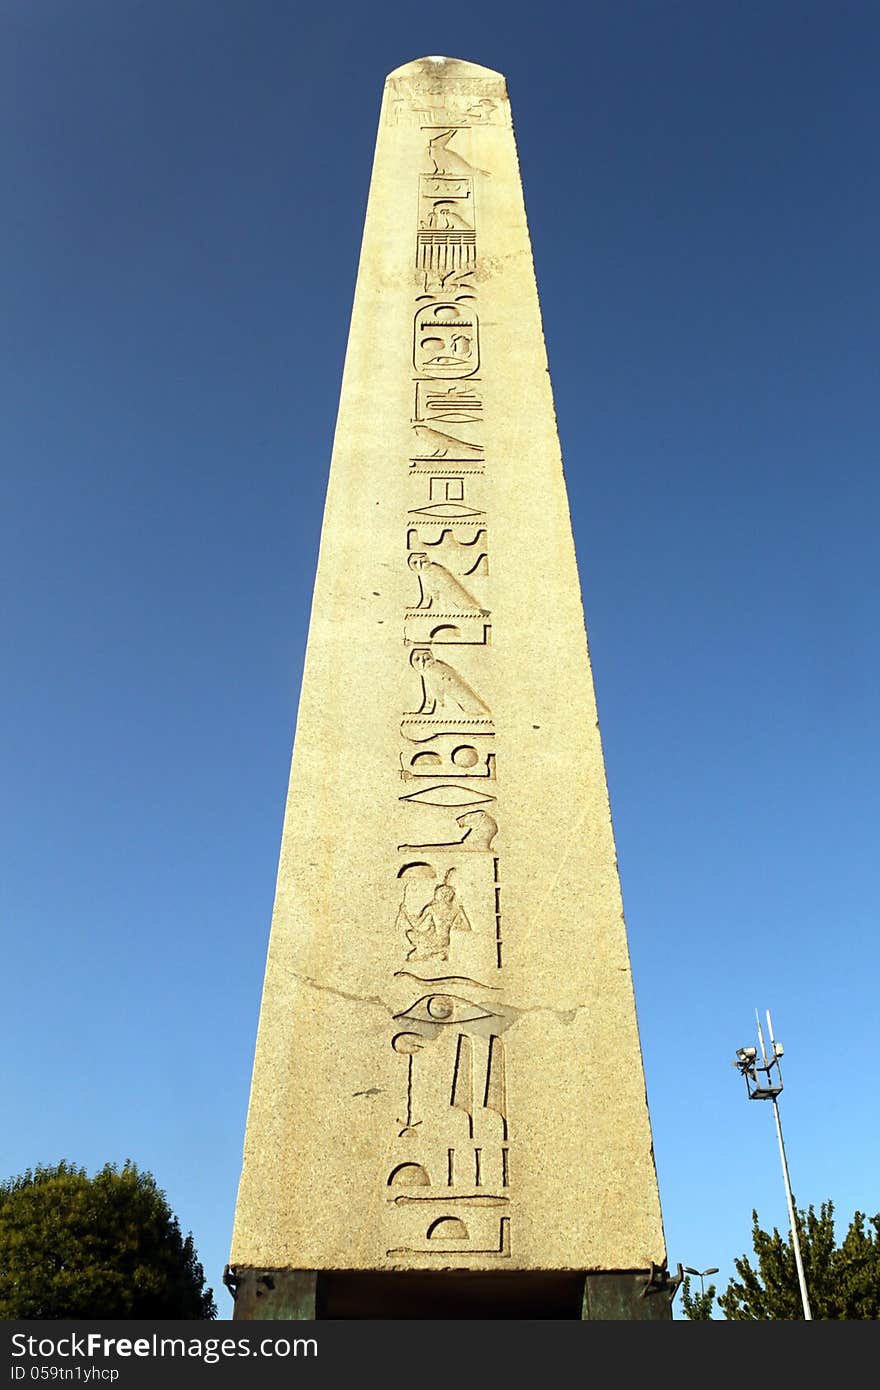 Egyptian obelisk from Istanbul historic center